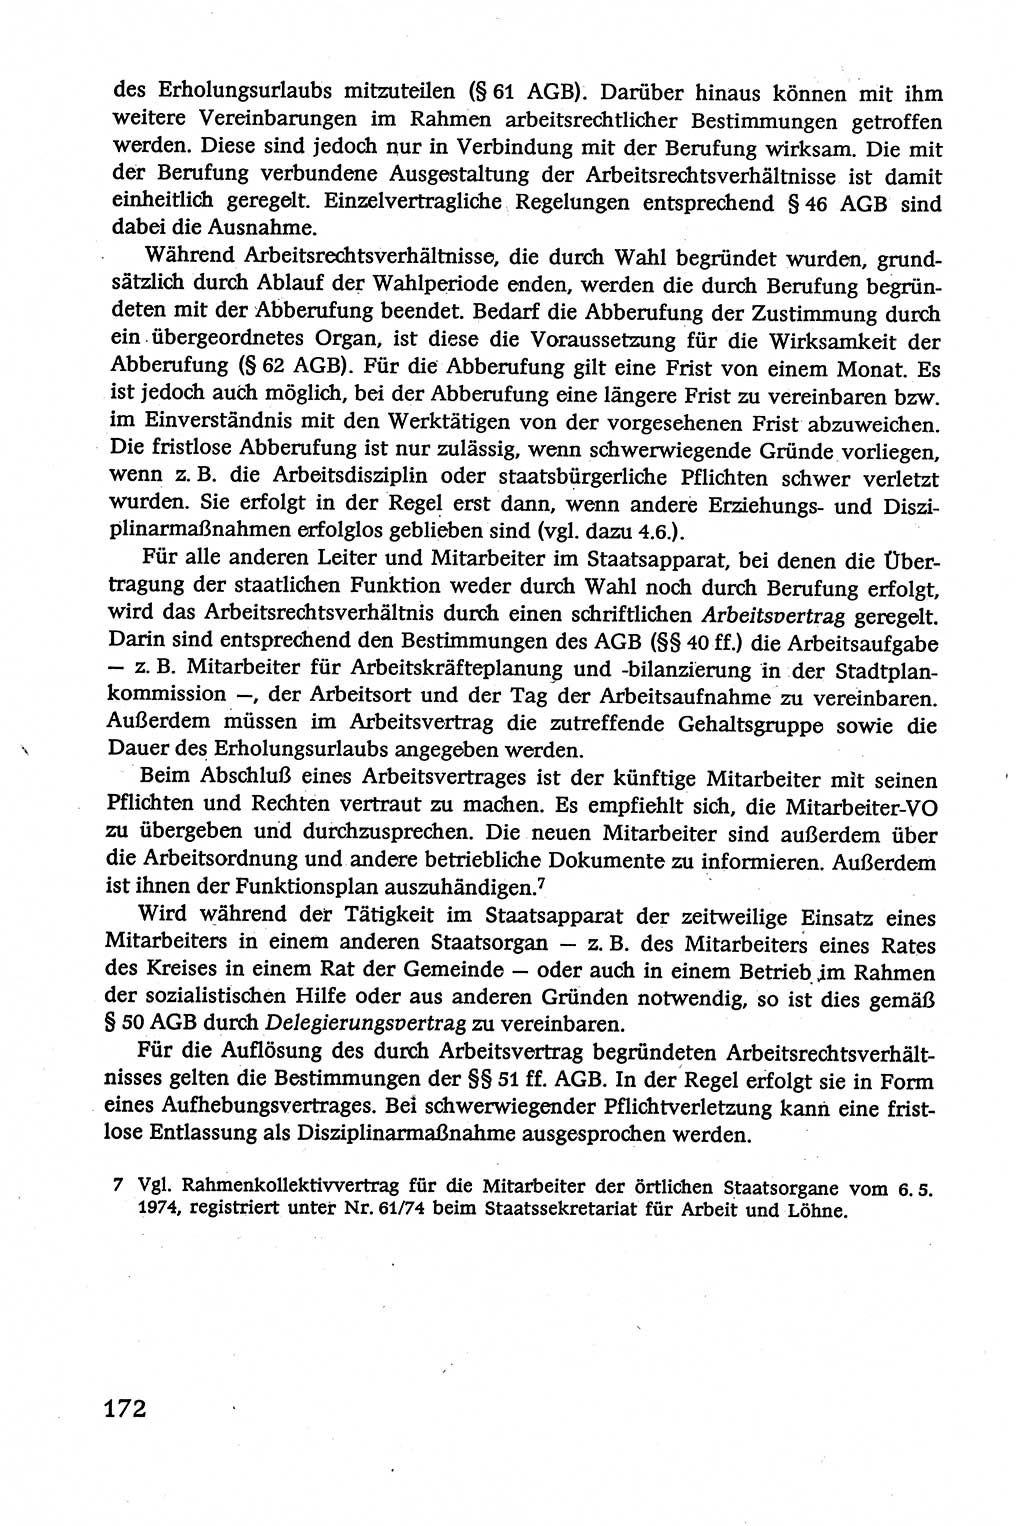 Verwaltungsrecht [Deutsche Demokratische Republik (DDR)], Lehrbuch 1979, Seite 172 (Verw.-R. DDR Lb. 1979, S. 172)